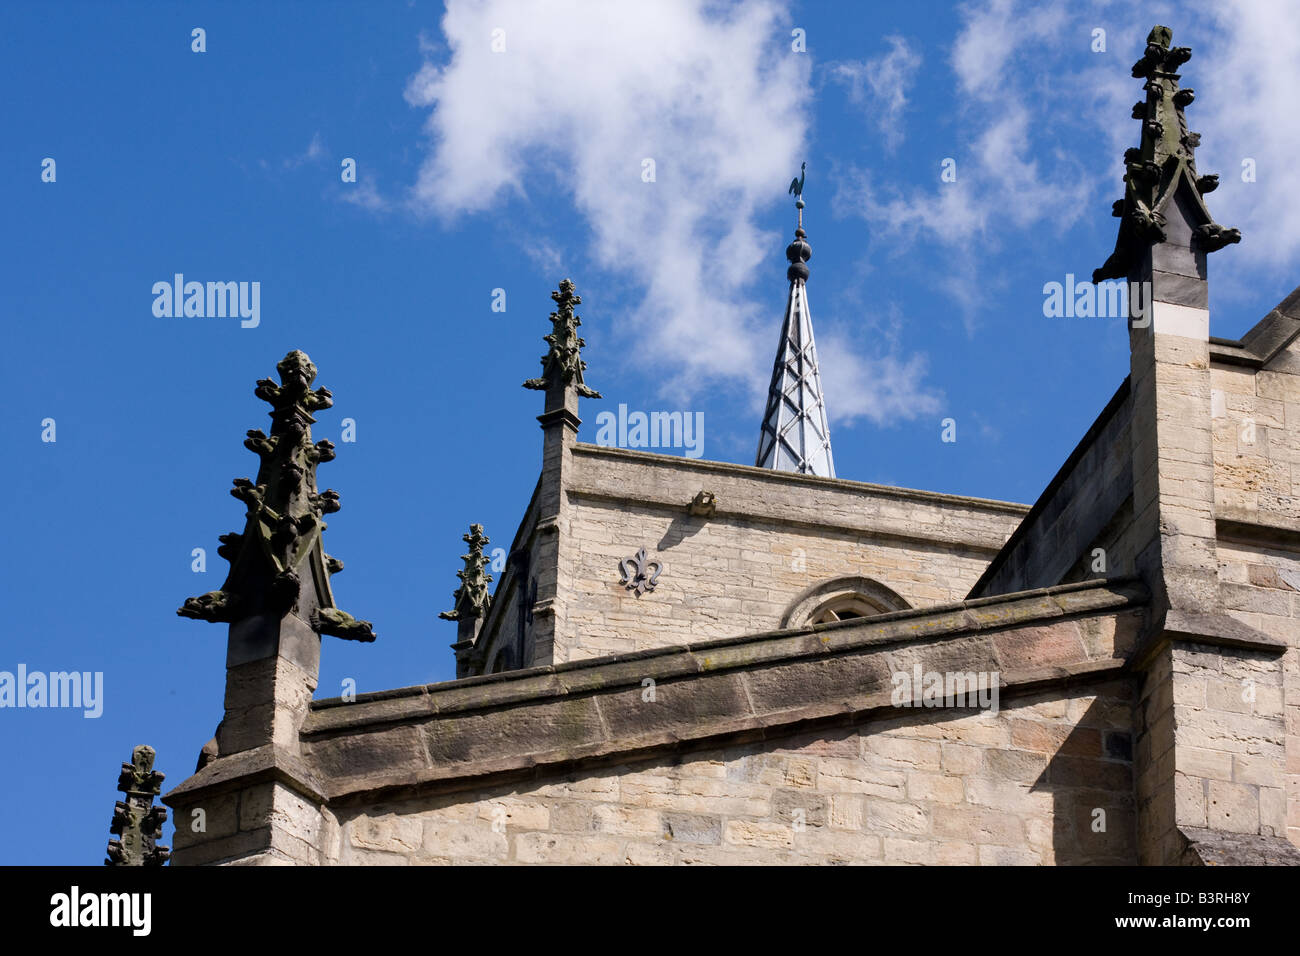 Church steeple against a blue sky Stock Photo